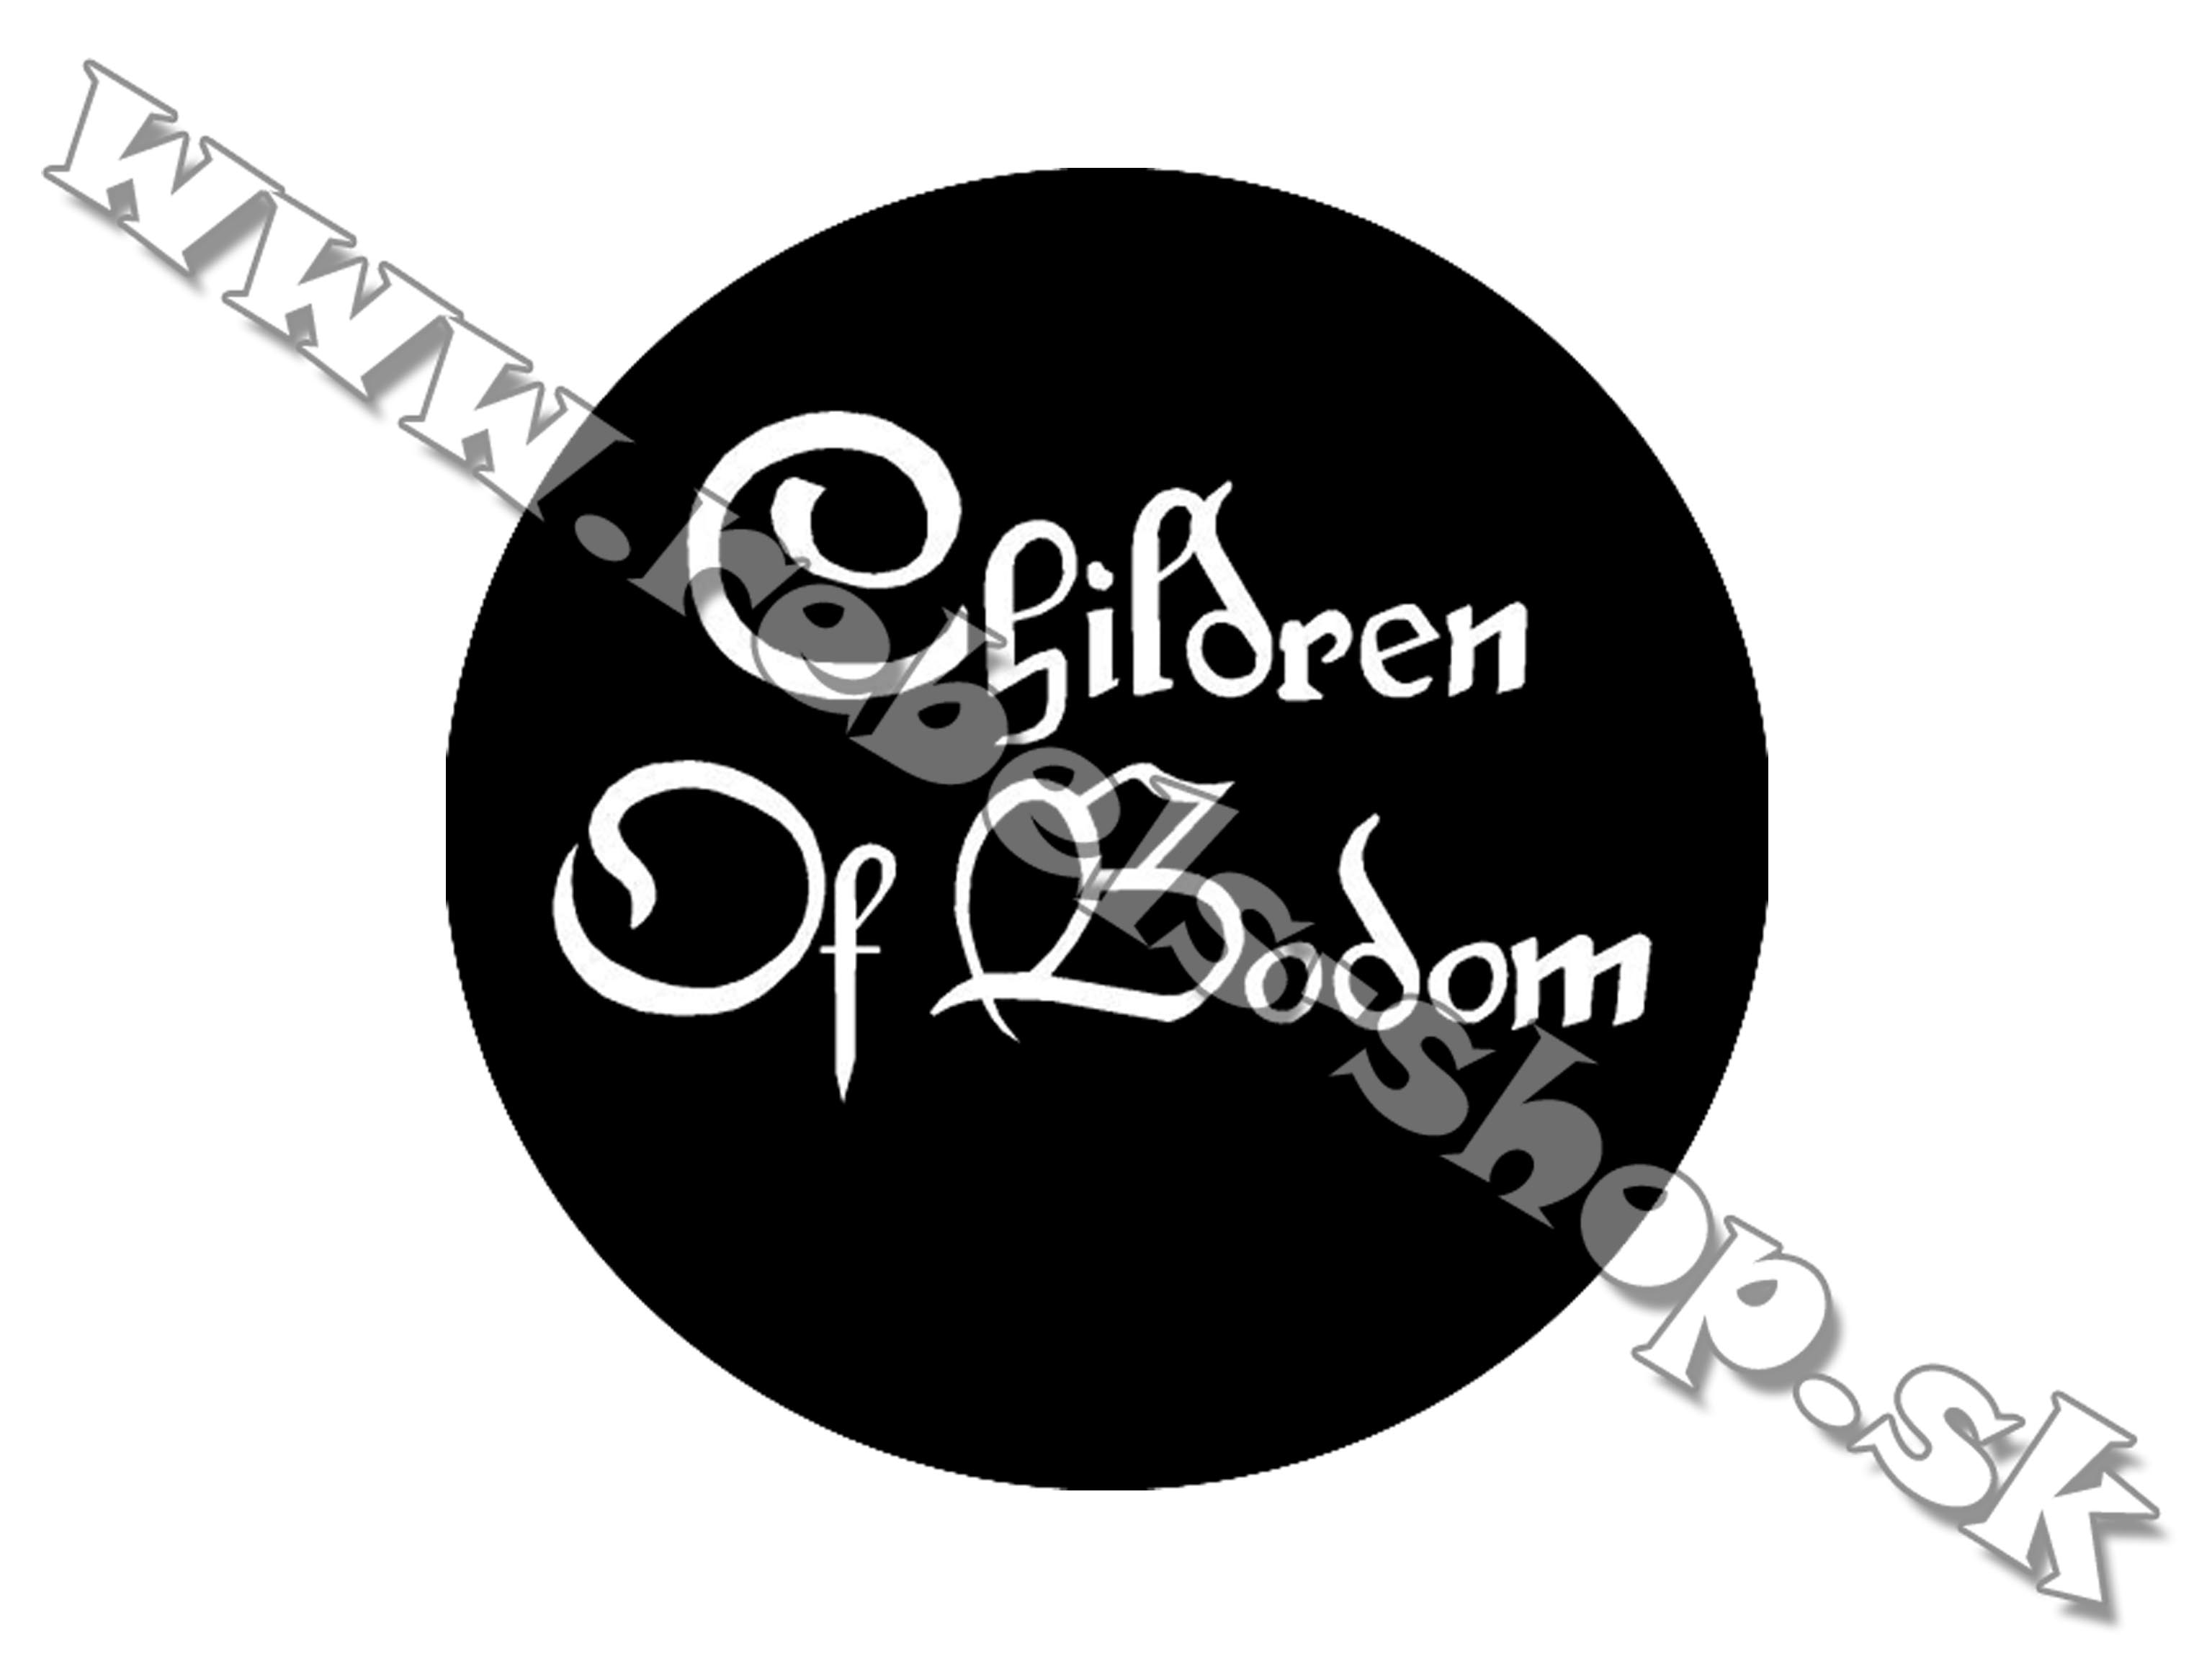 Odznak "Children Of Bodom"